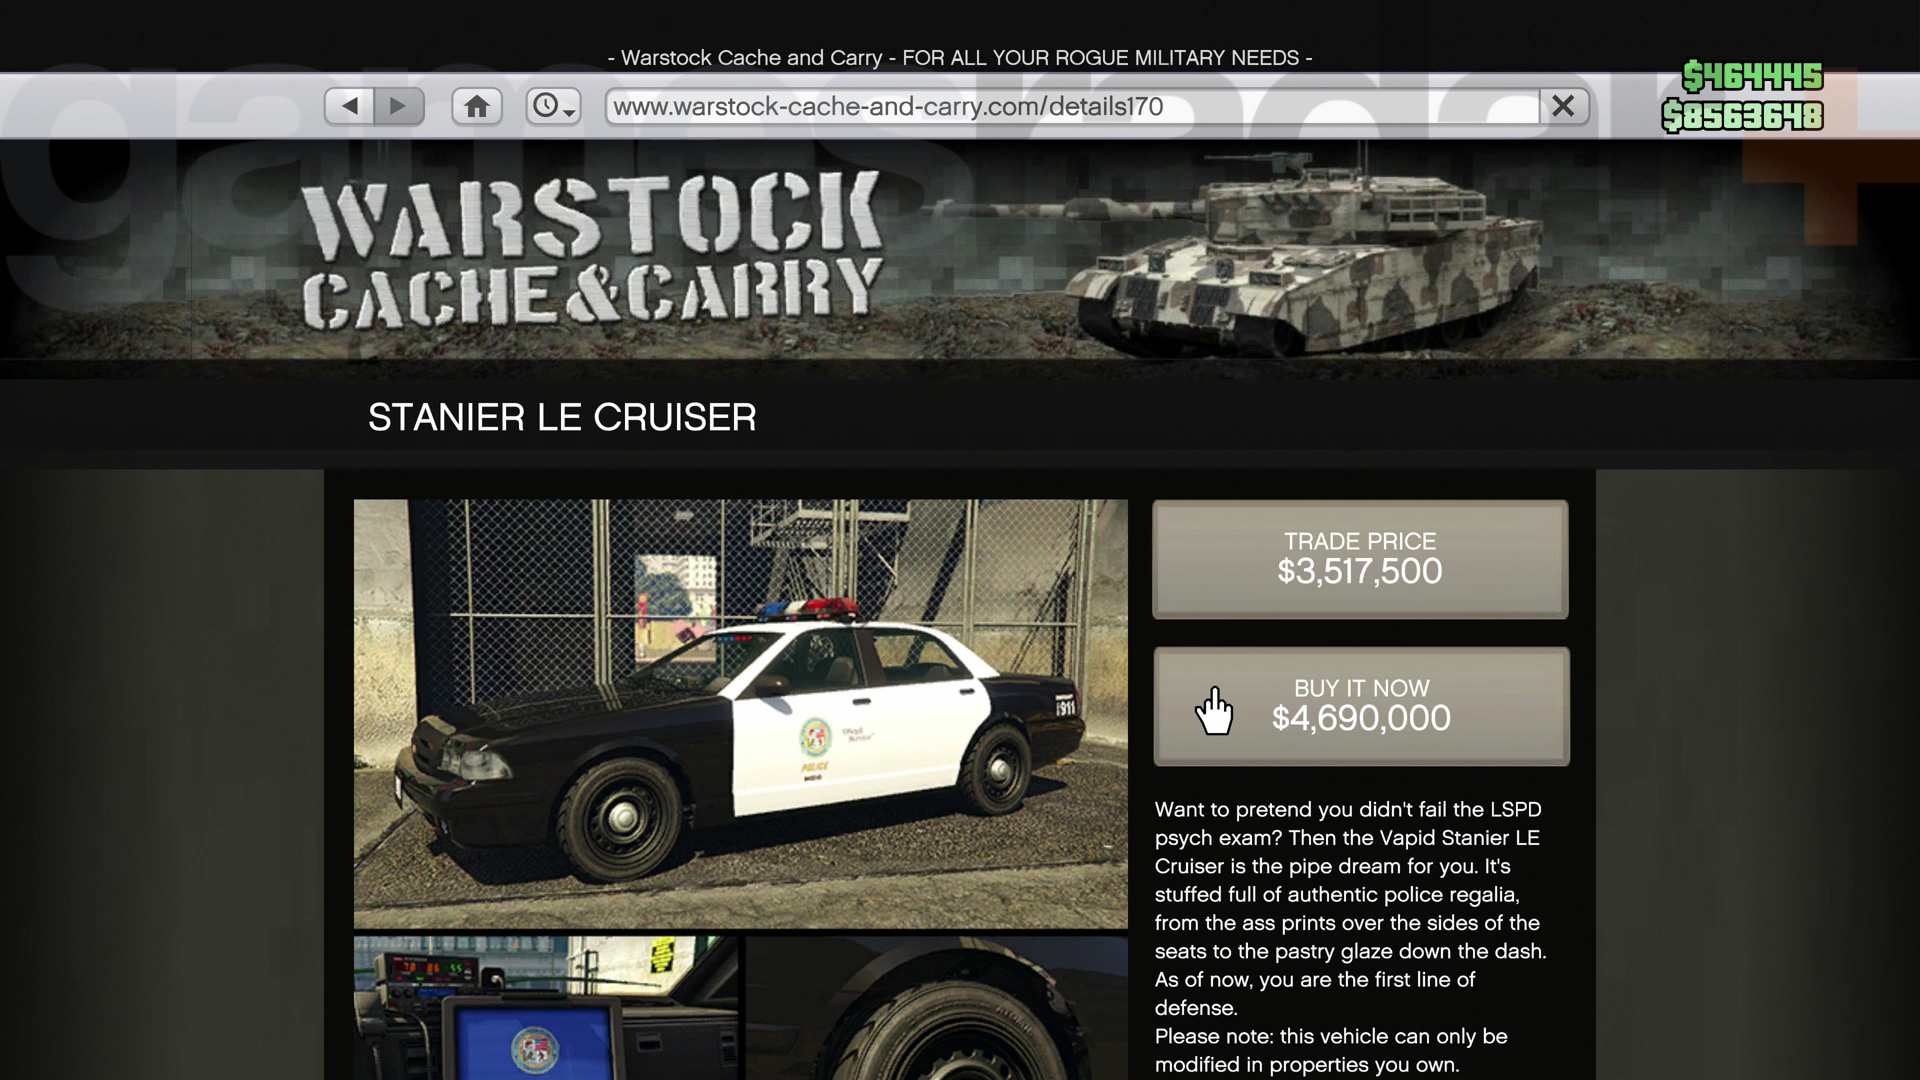 Policejní křižník GTA Online na prodej na stránkách Warstock Cache & Carry